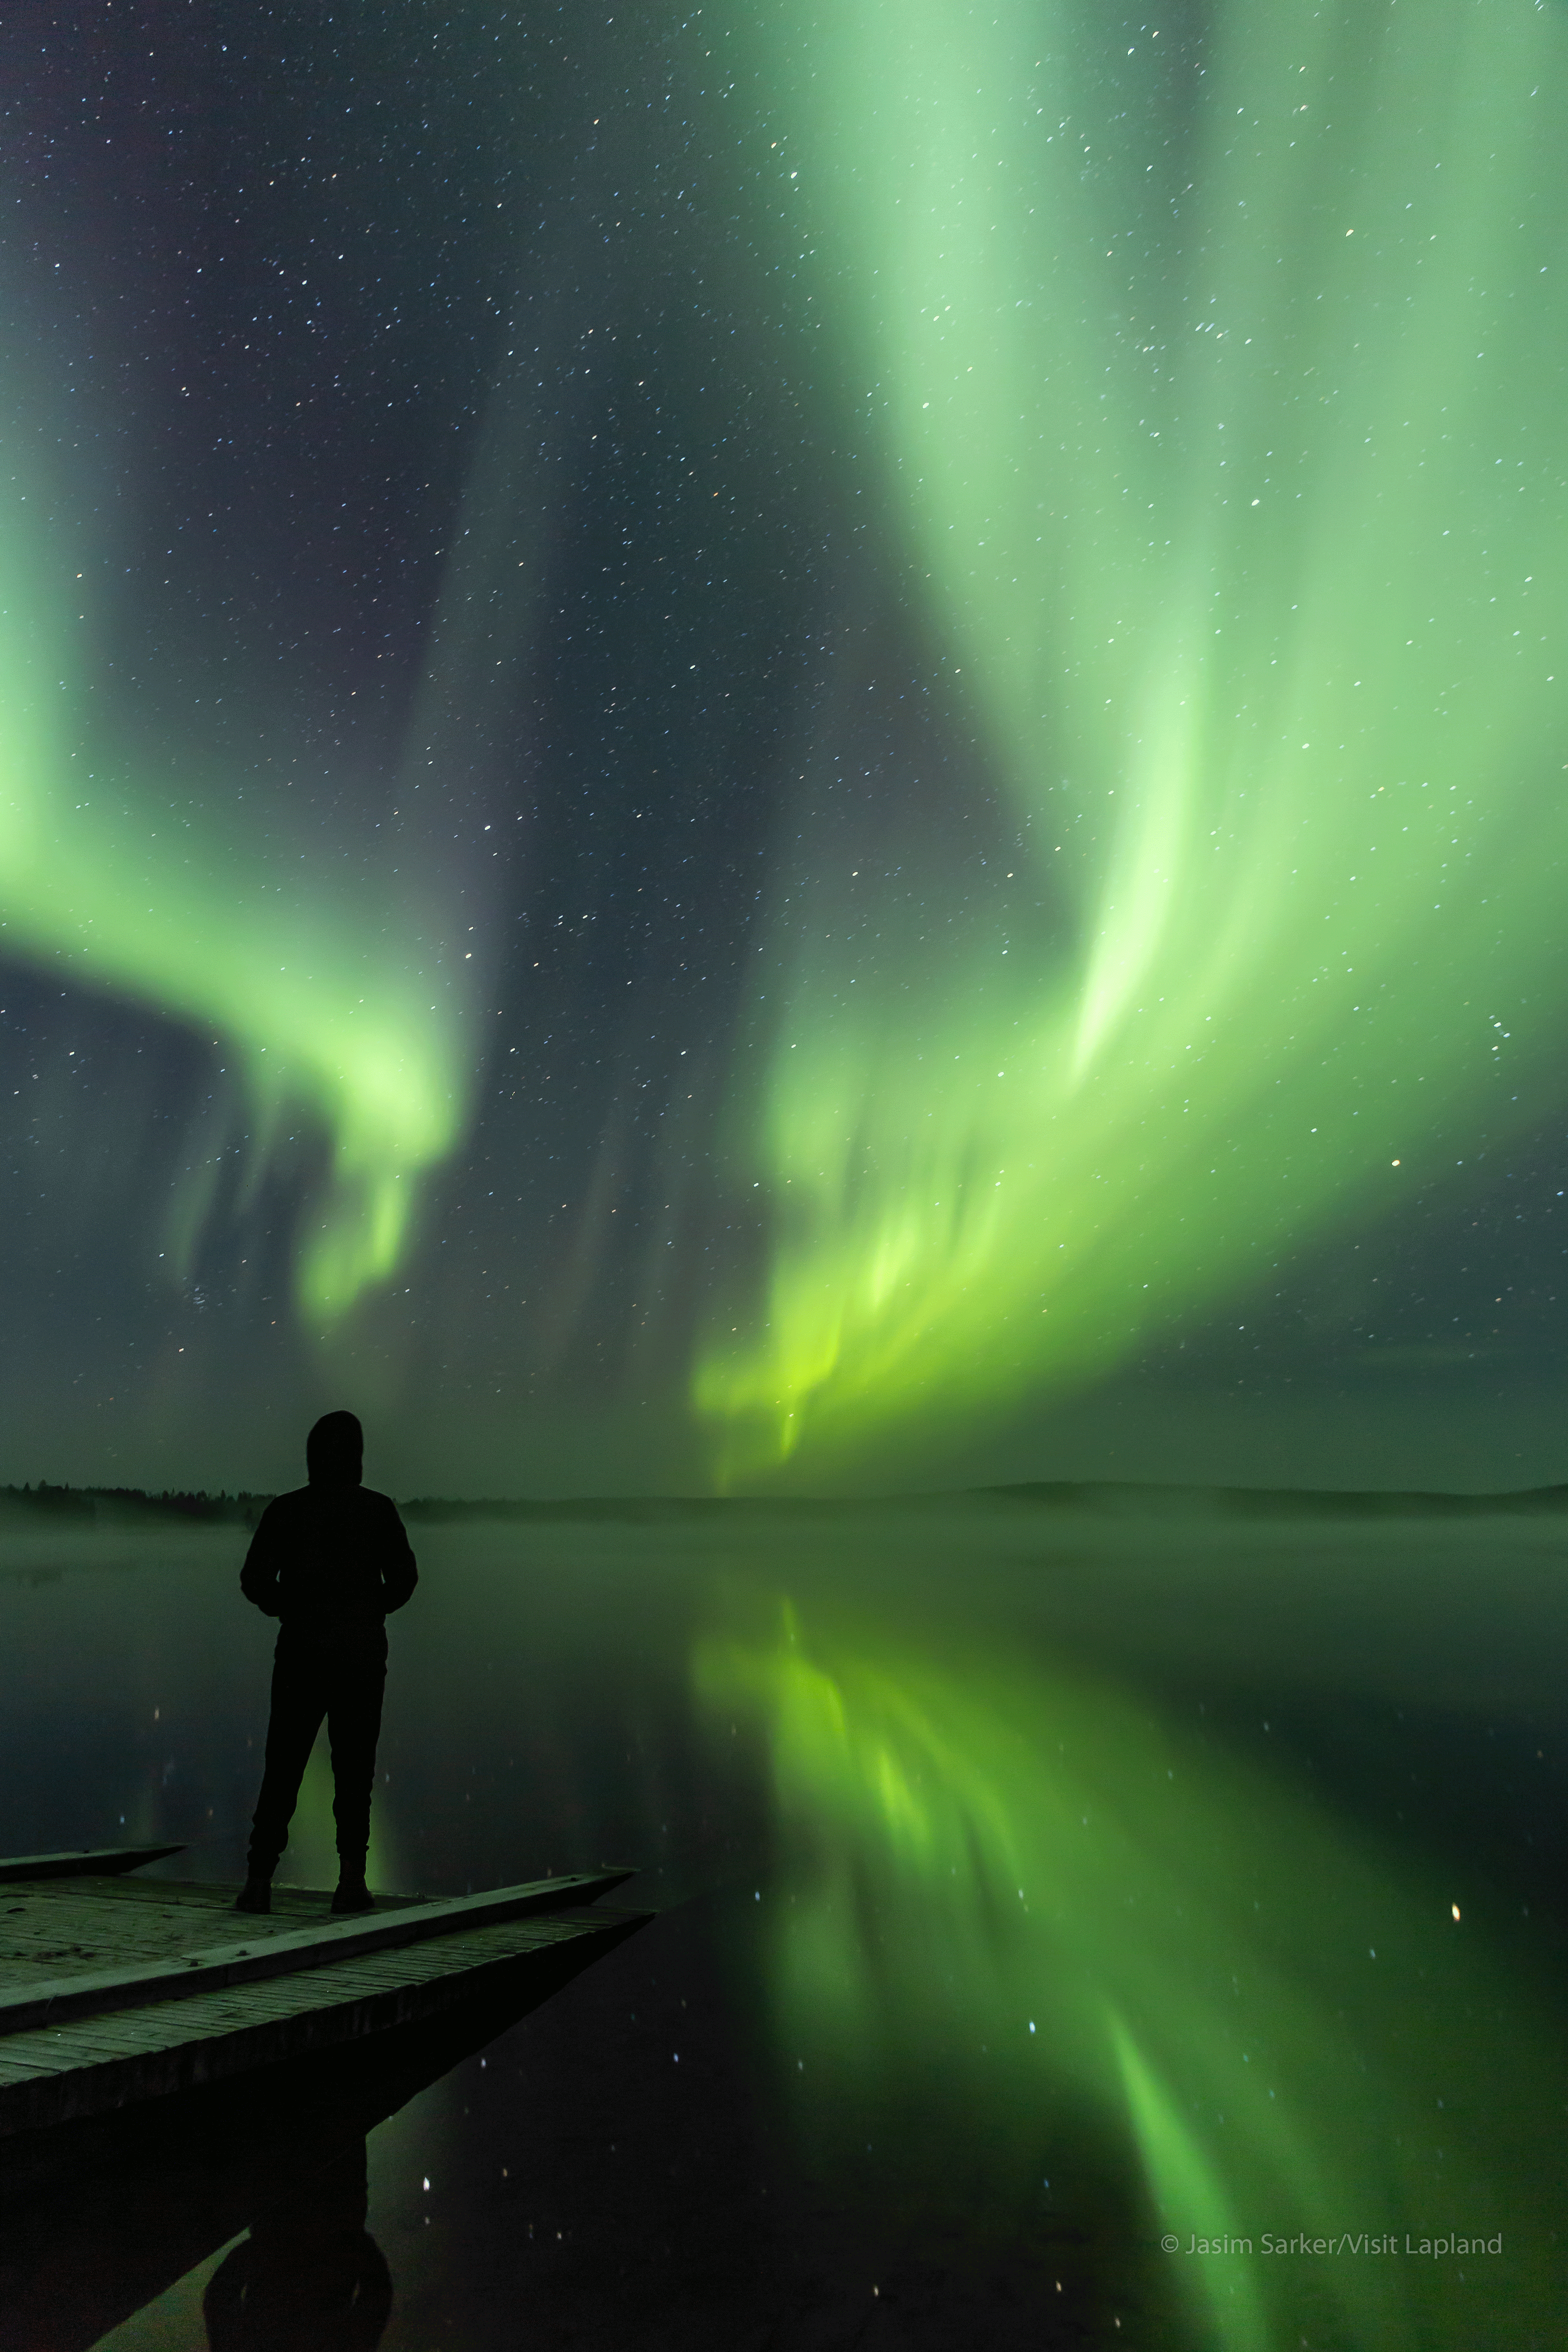 Aurora borealis tour in Lapland by Jasim Sarker Visit Lapland